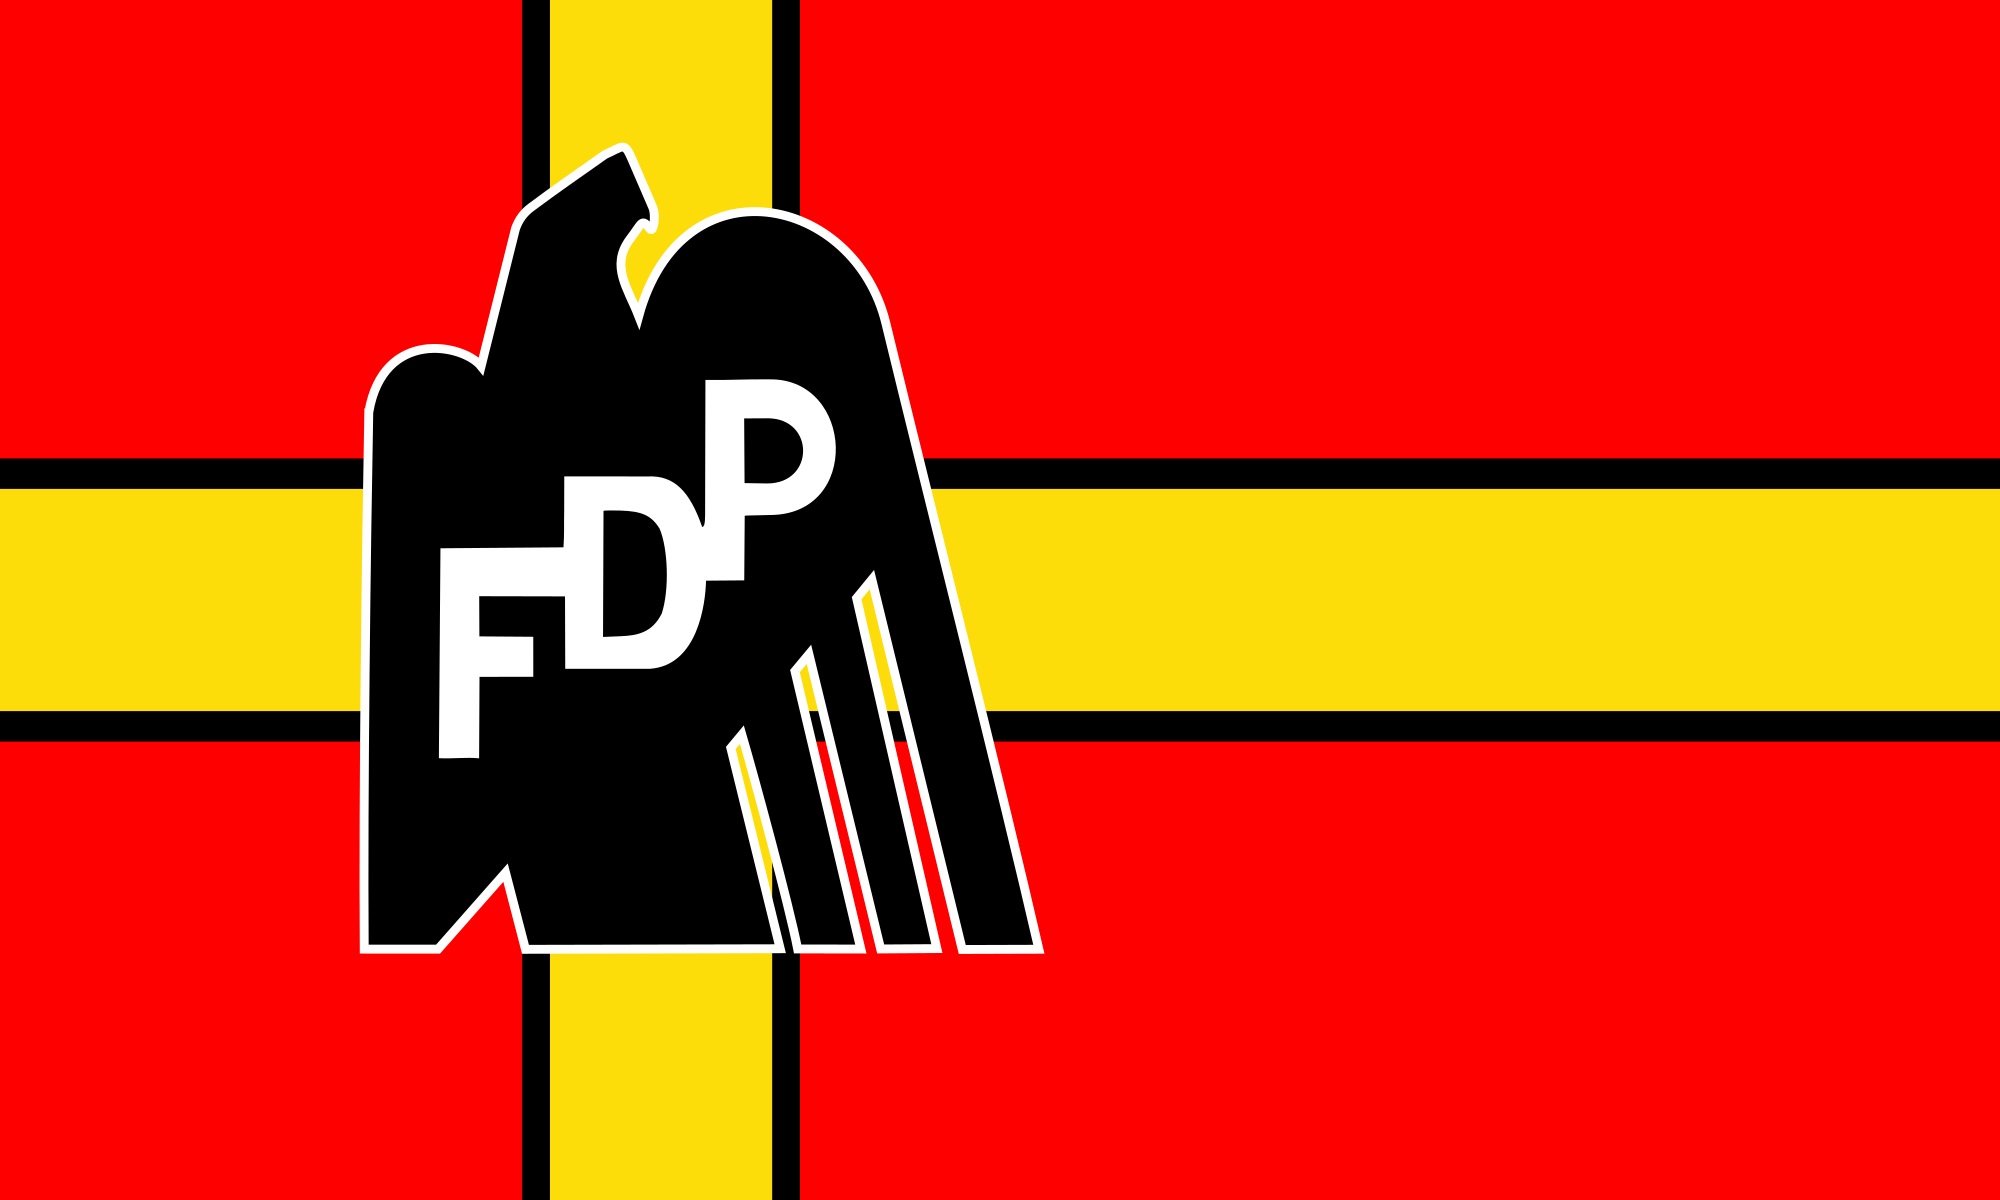 Μόνο με συγκατάθεση ΔΝΤ λέει ΝΑΙ στο Ελληνικό πρόγραμμα το FDP